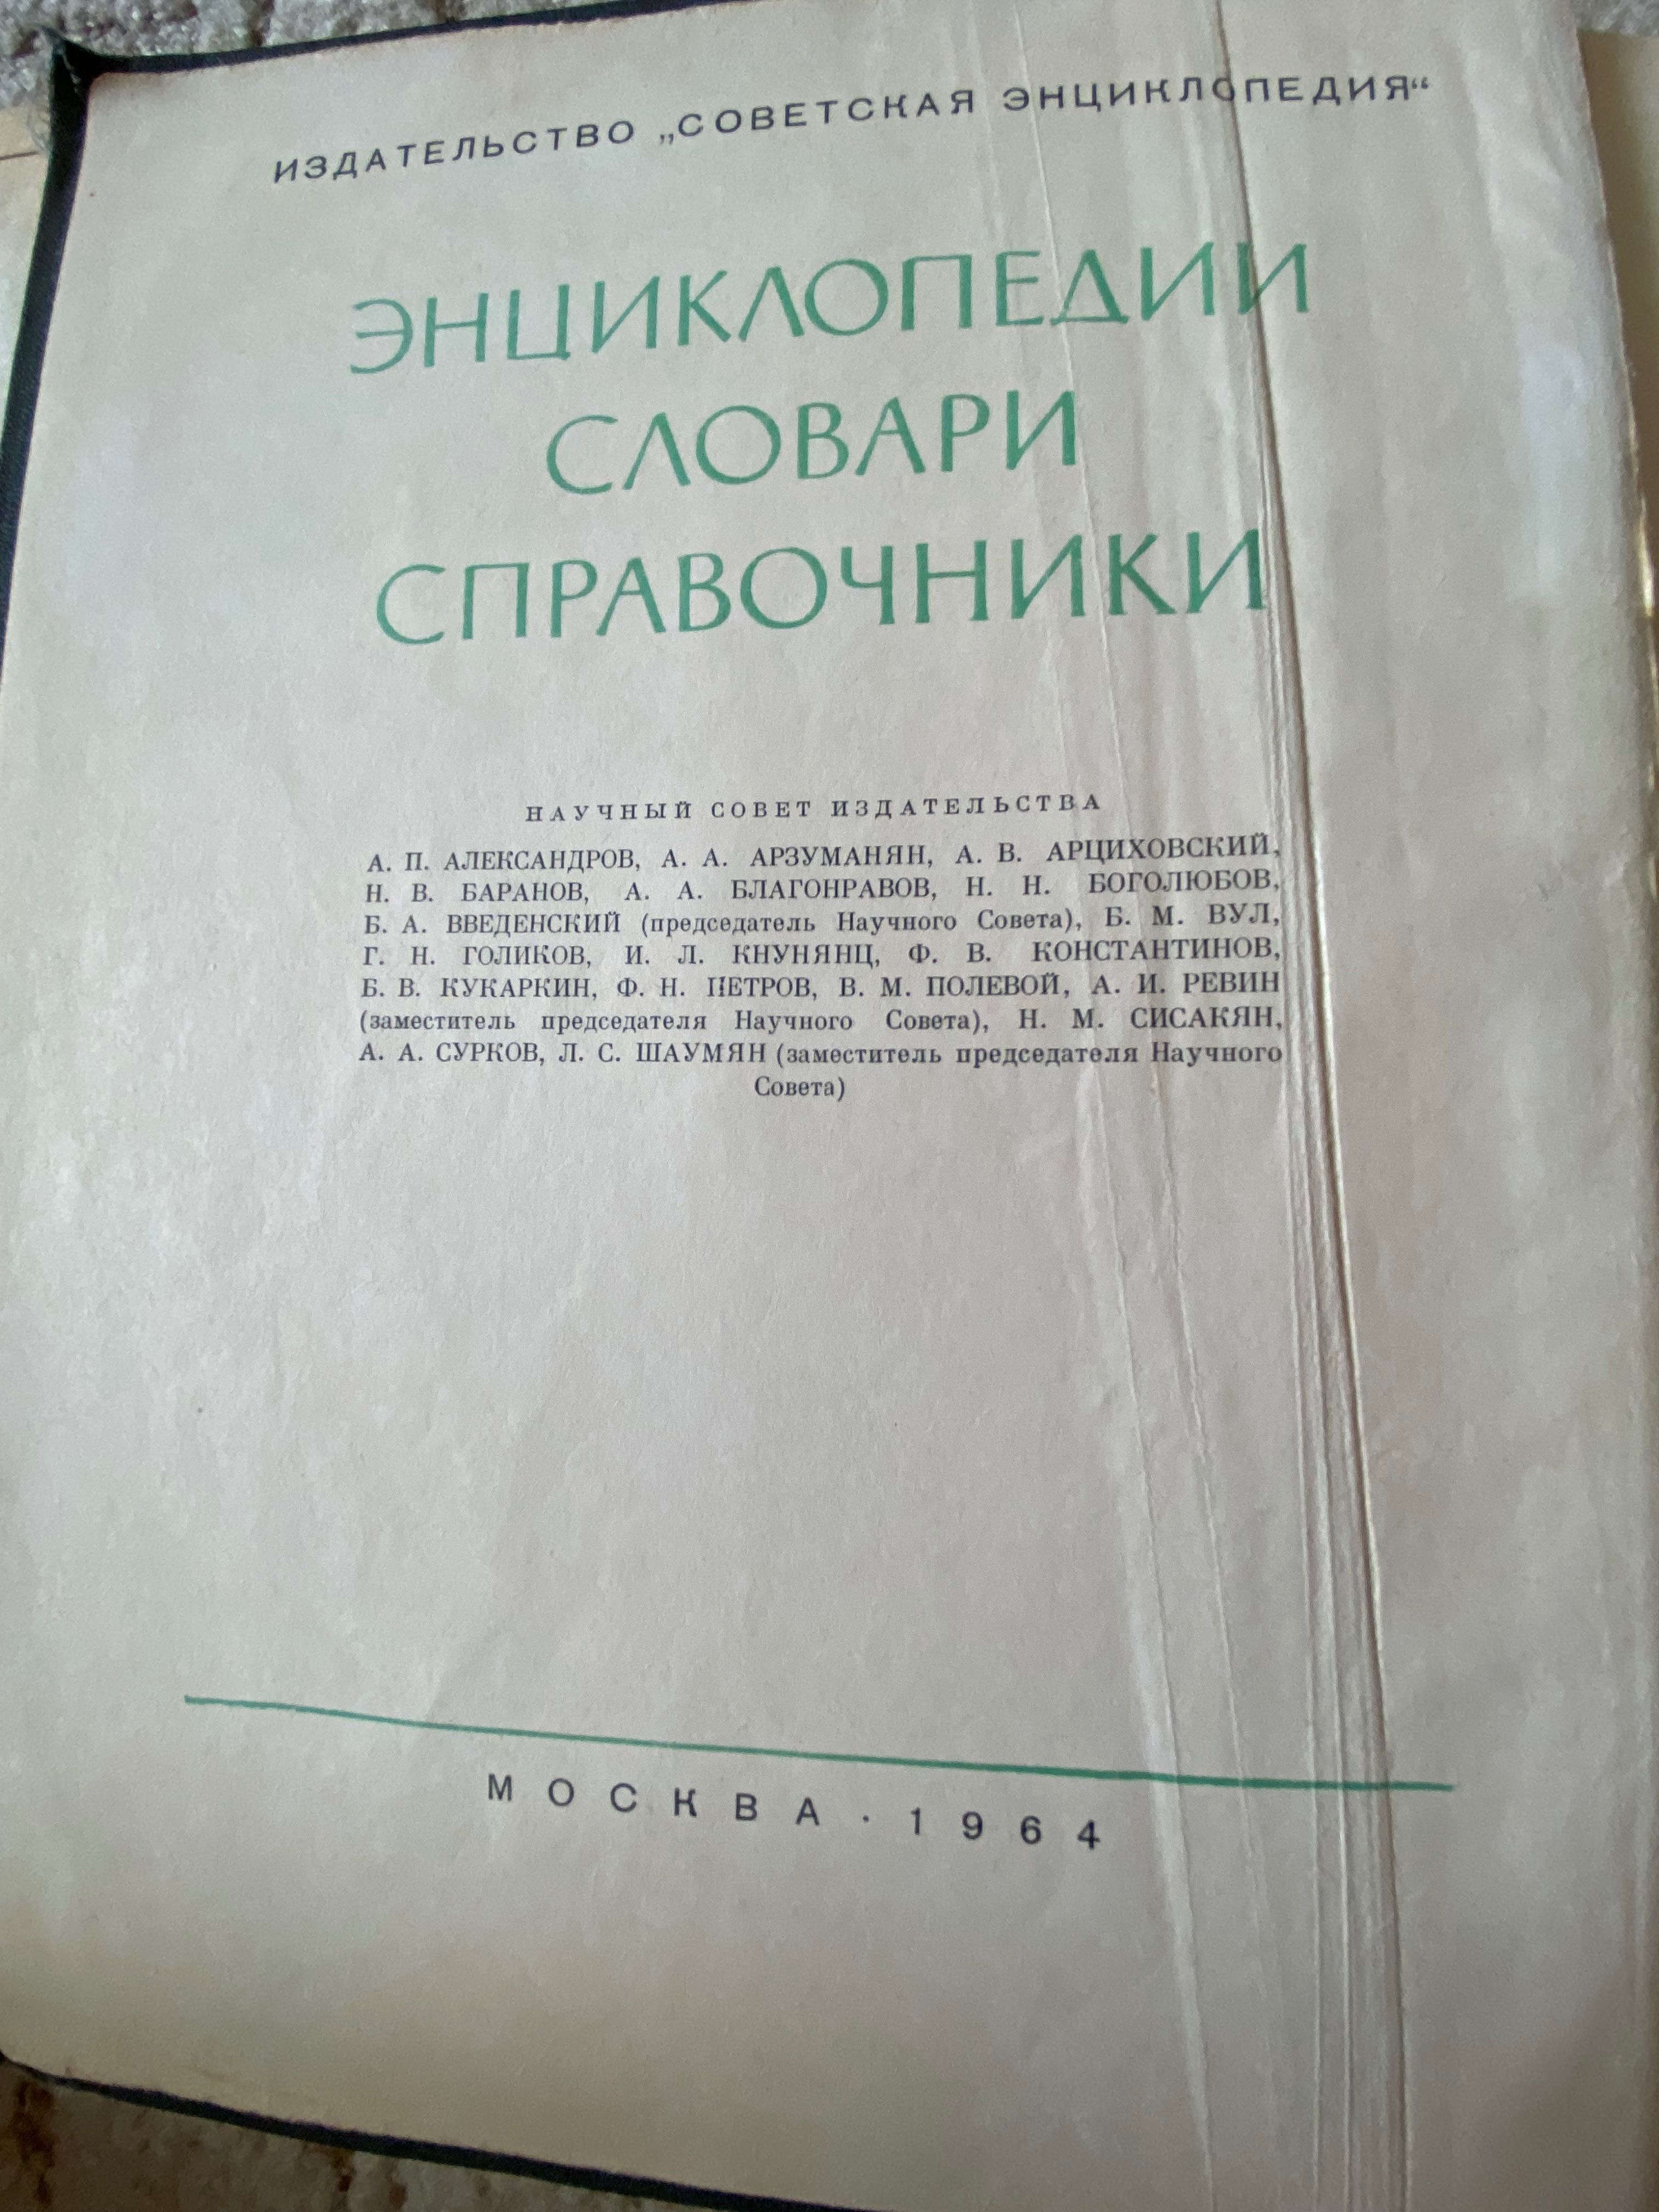 Справочник фельдшера 1983/популярная медицинская энциклопедия 1964